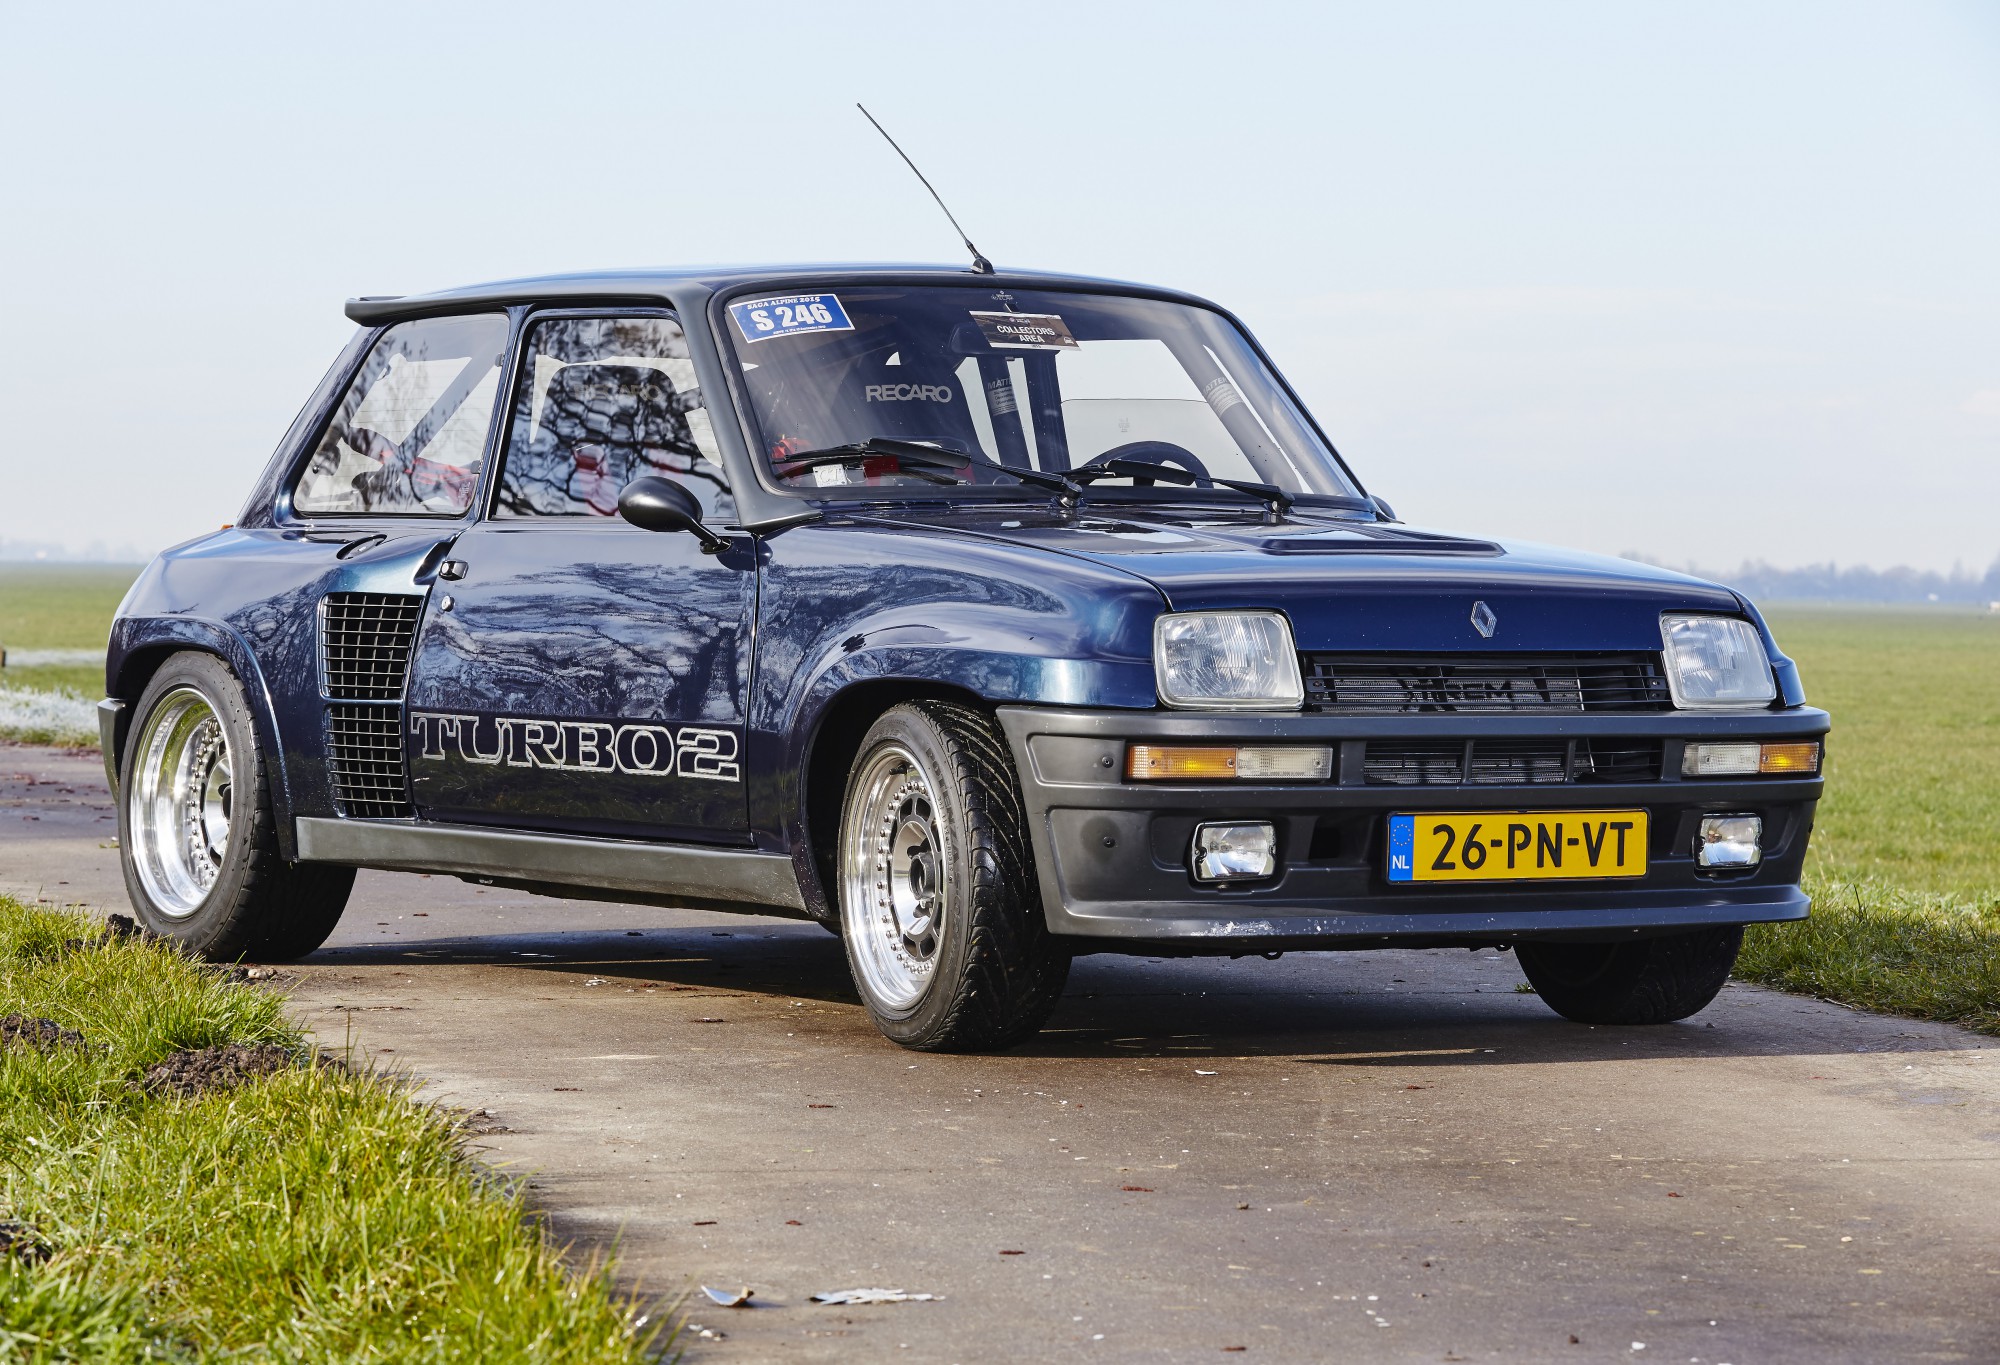 dienblad Soms dreigen Renault 5 Turbo 2 - Een beetje gevaarlijk